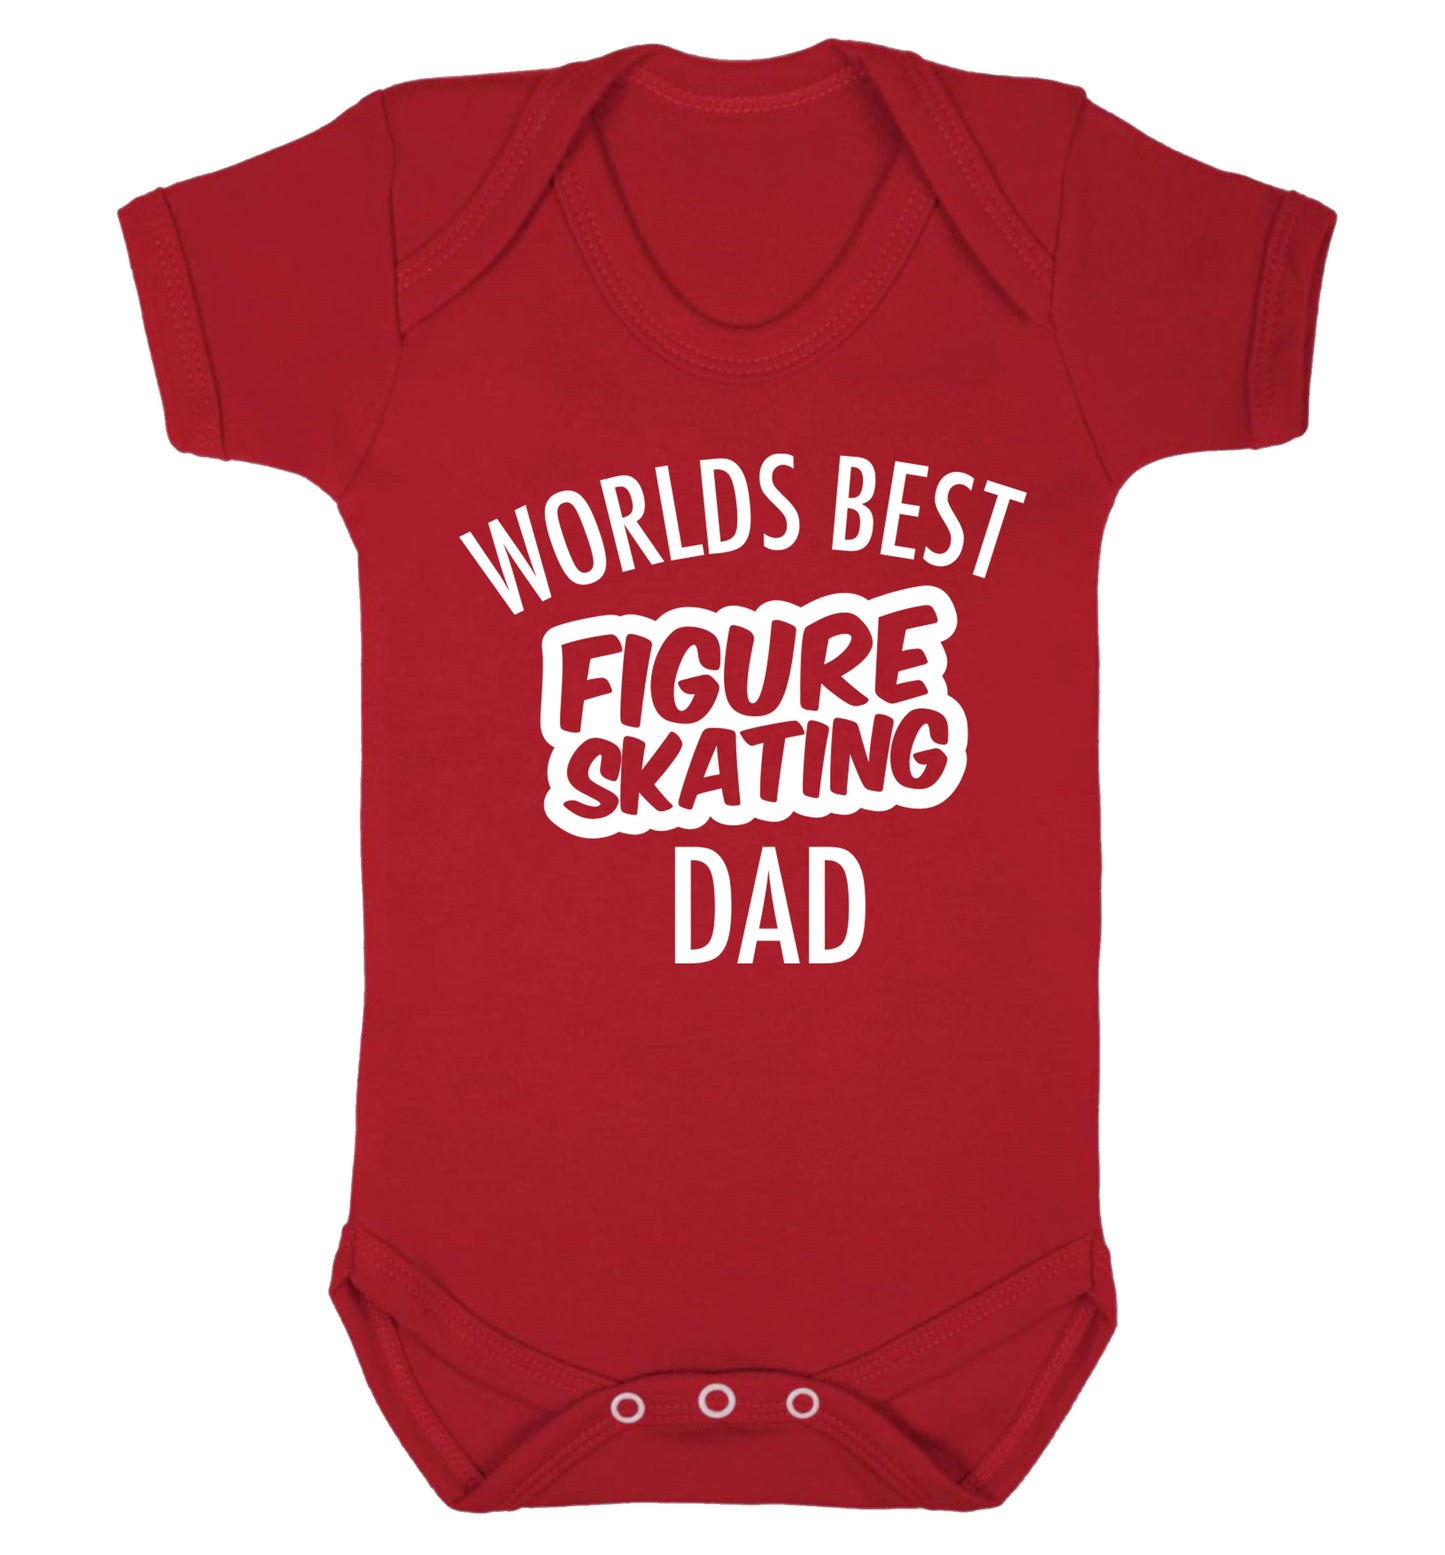 Worlds best figure skating dad Baby Vest red 18-24 months